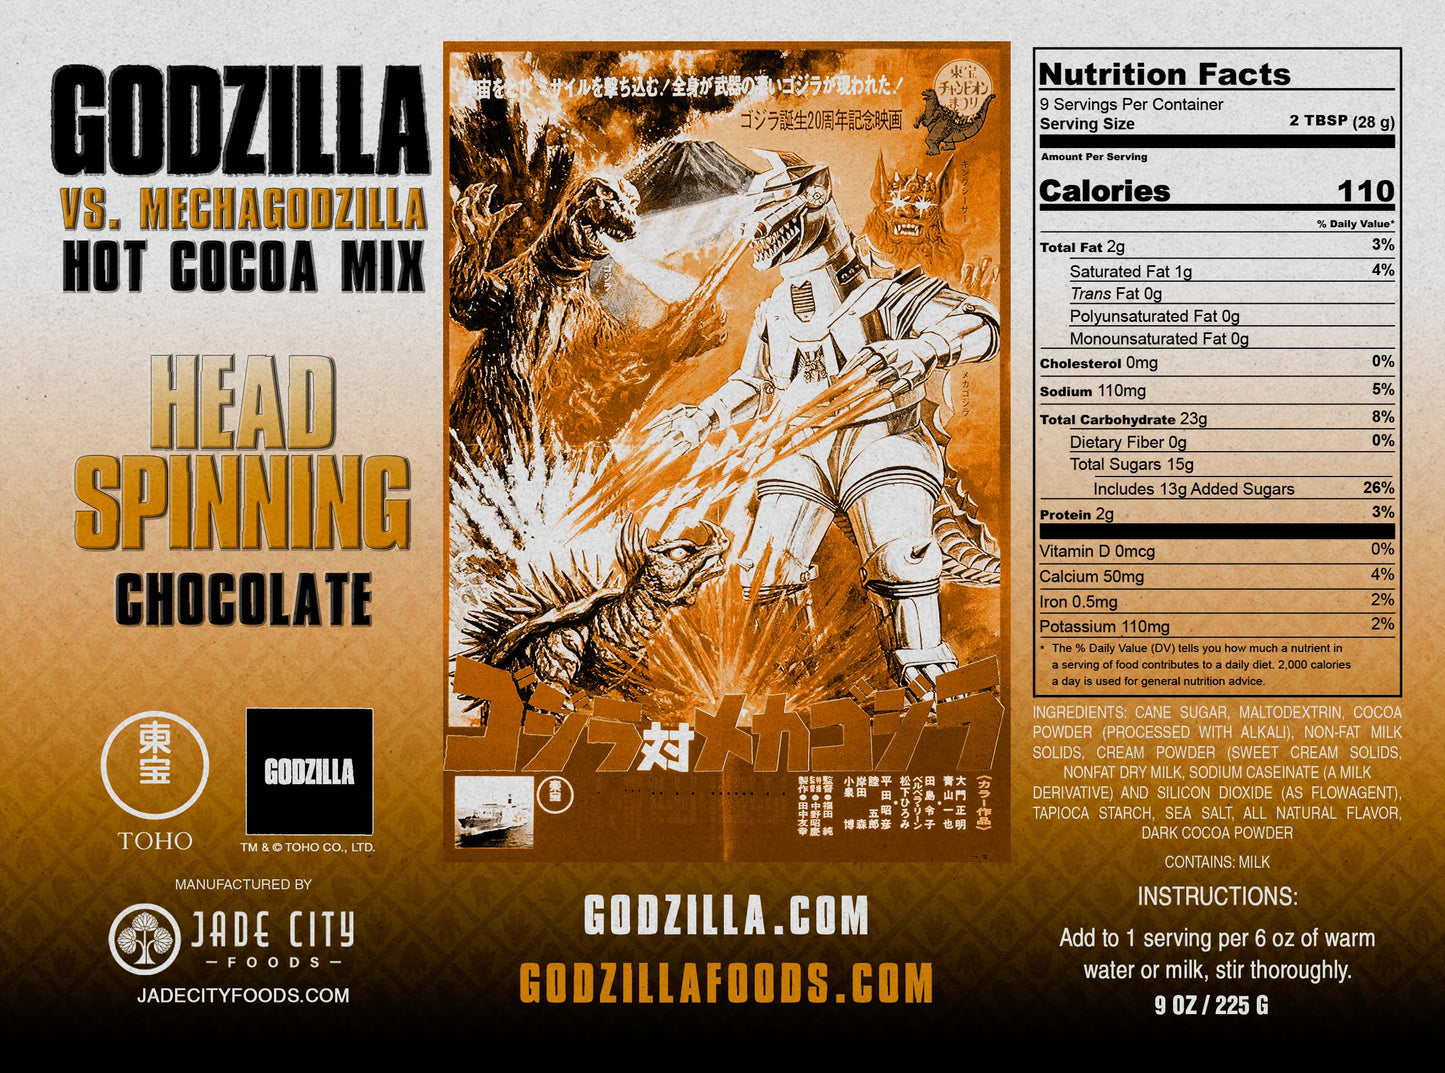 Godzilla vs. Mechagodzilla's Head Spinning Cocoa : Chocolate